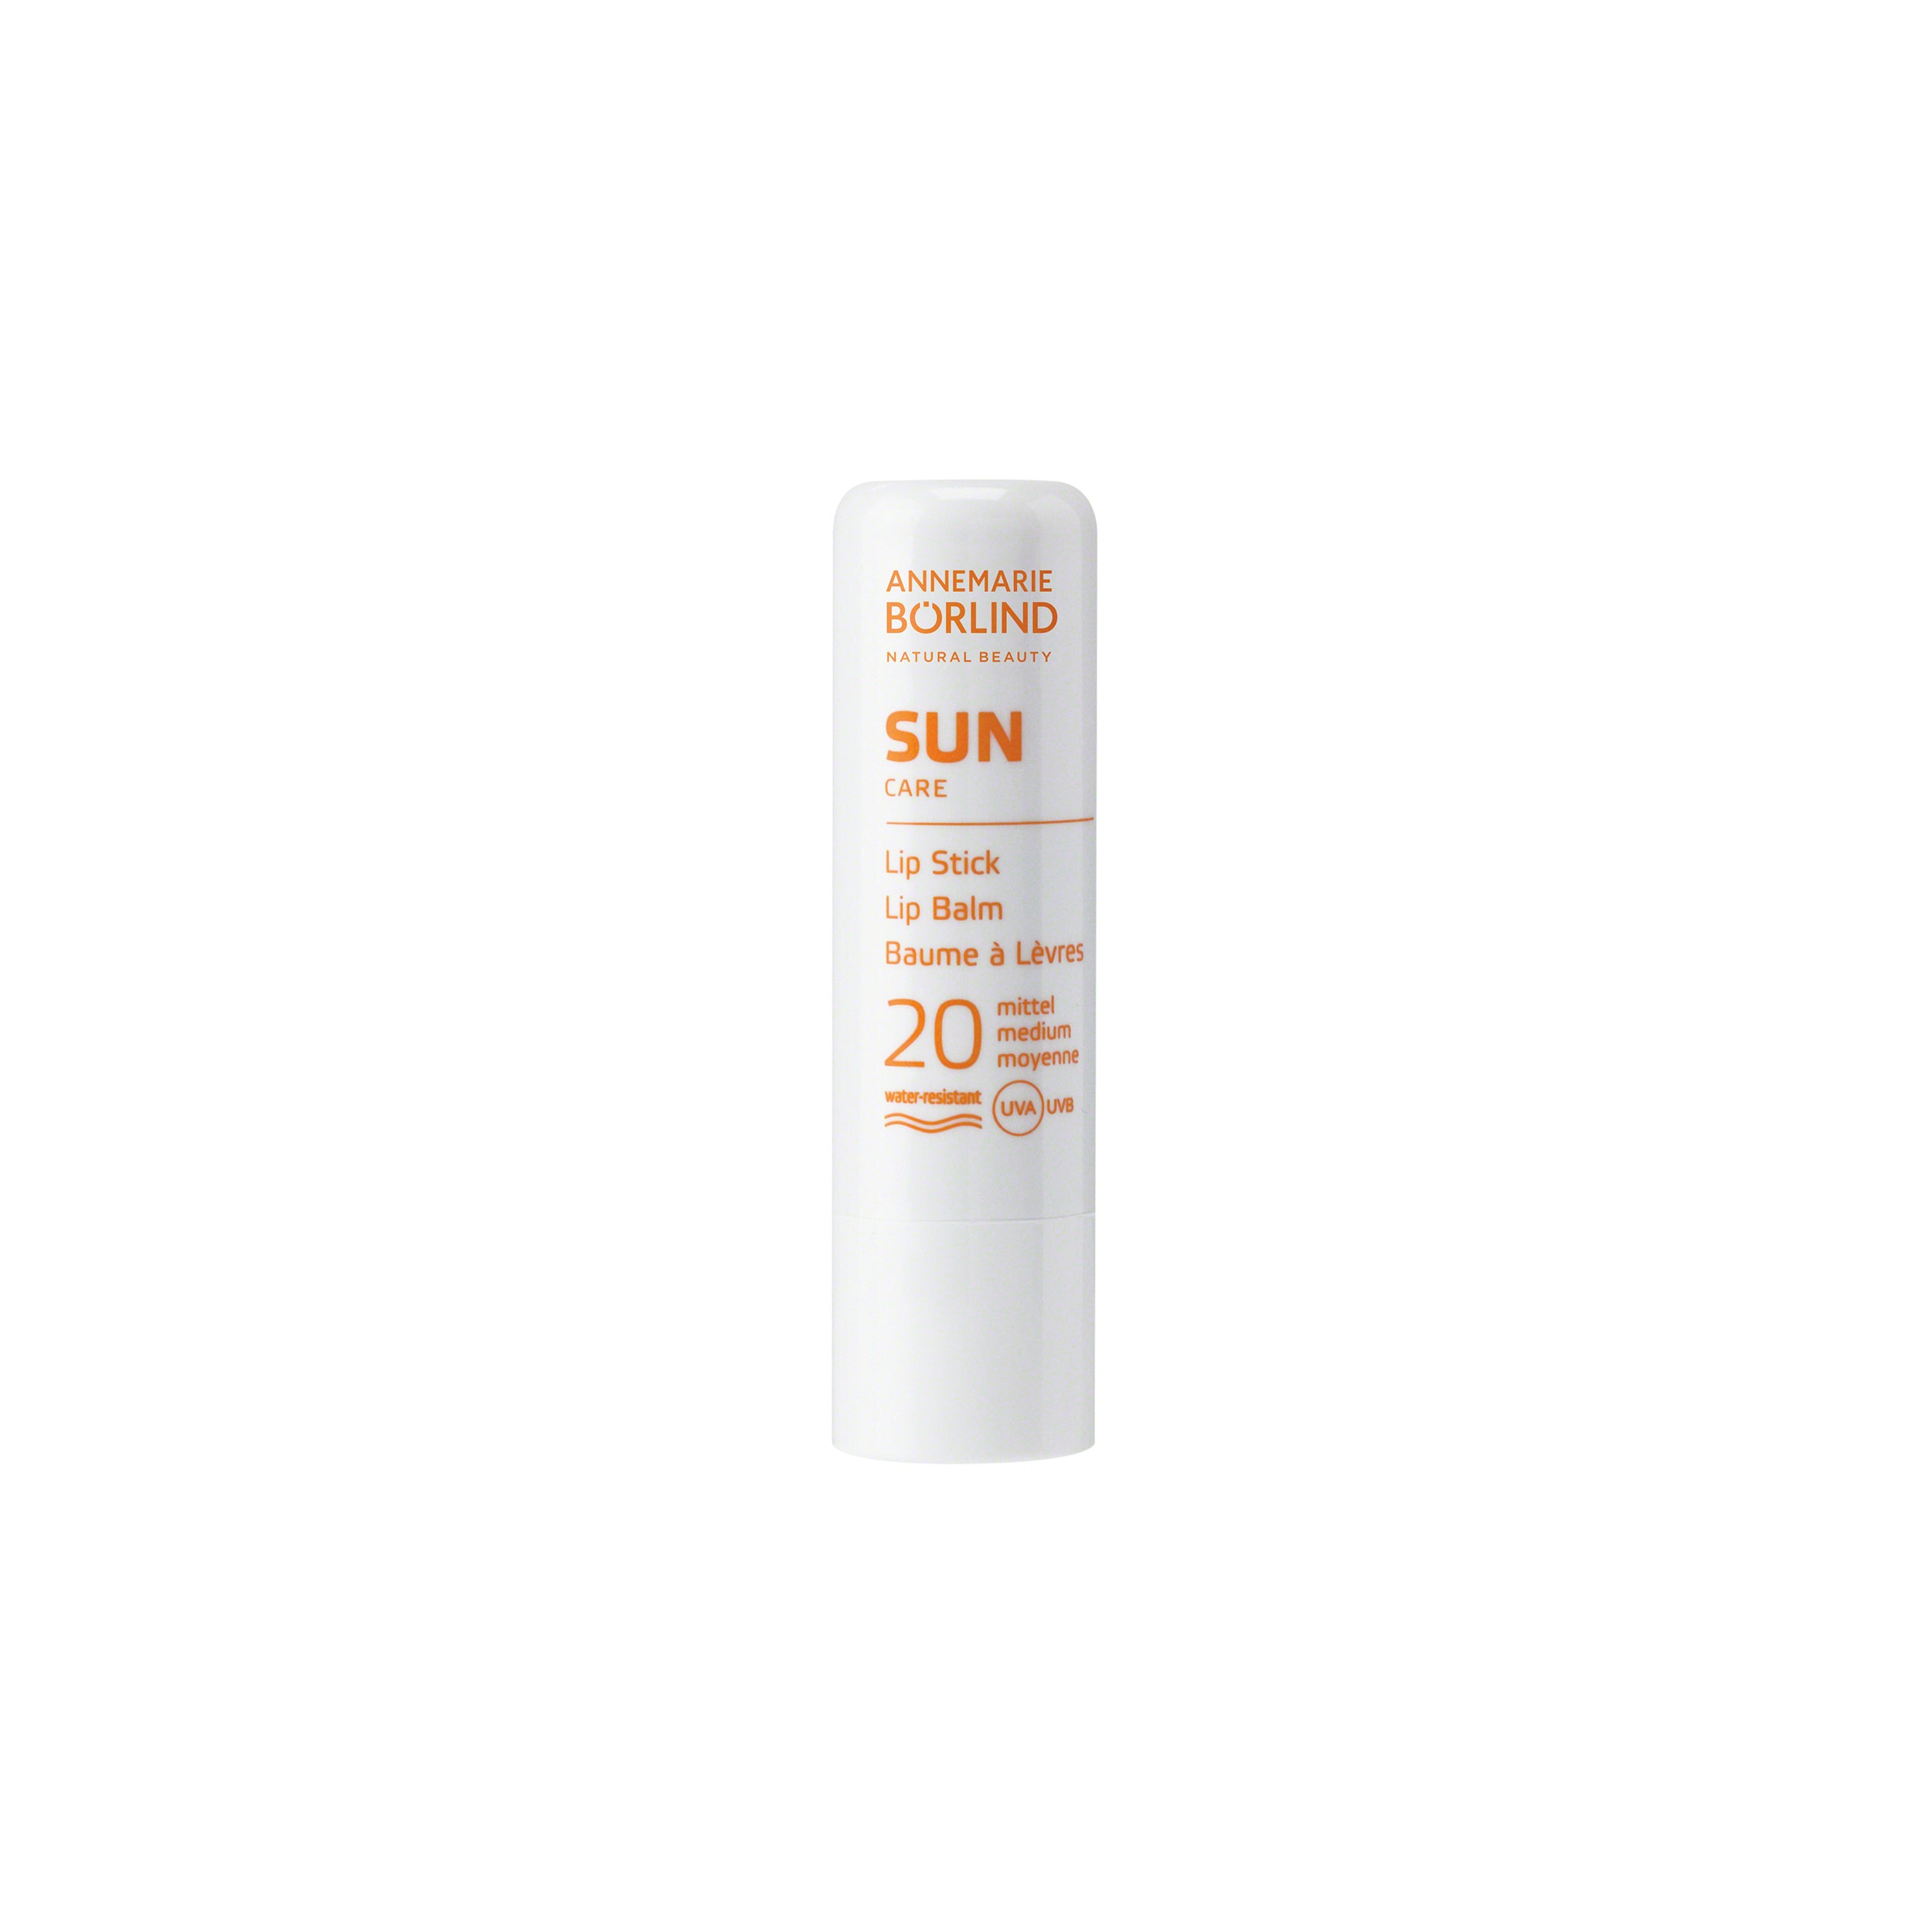 Annemarie Borlind Sun Care Sun Spray SPF 20 100ml/3.38oz